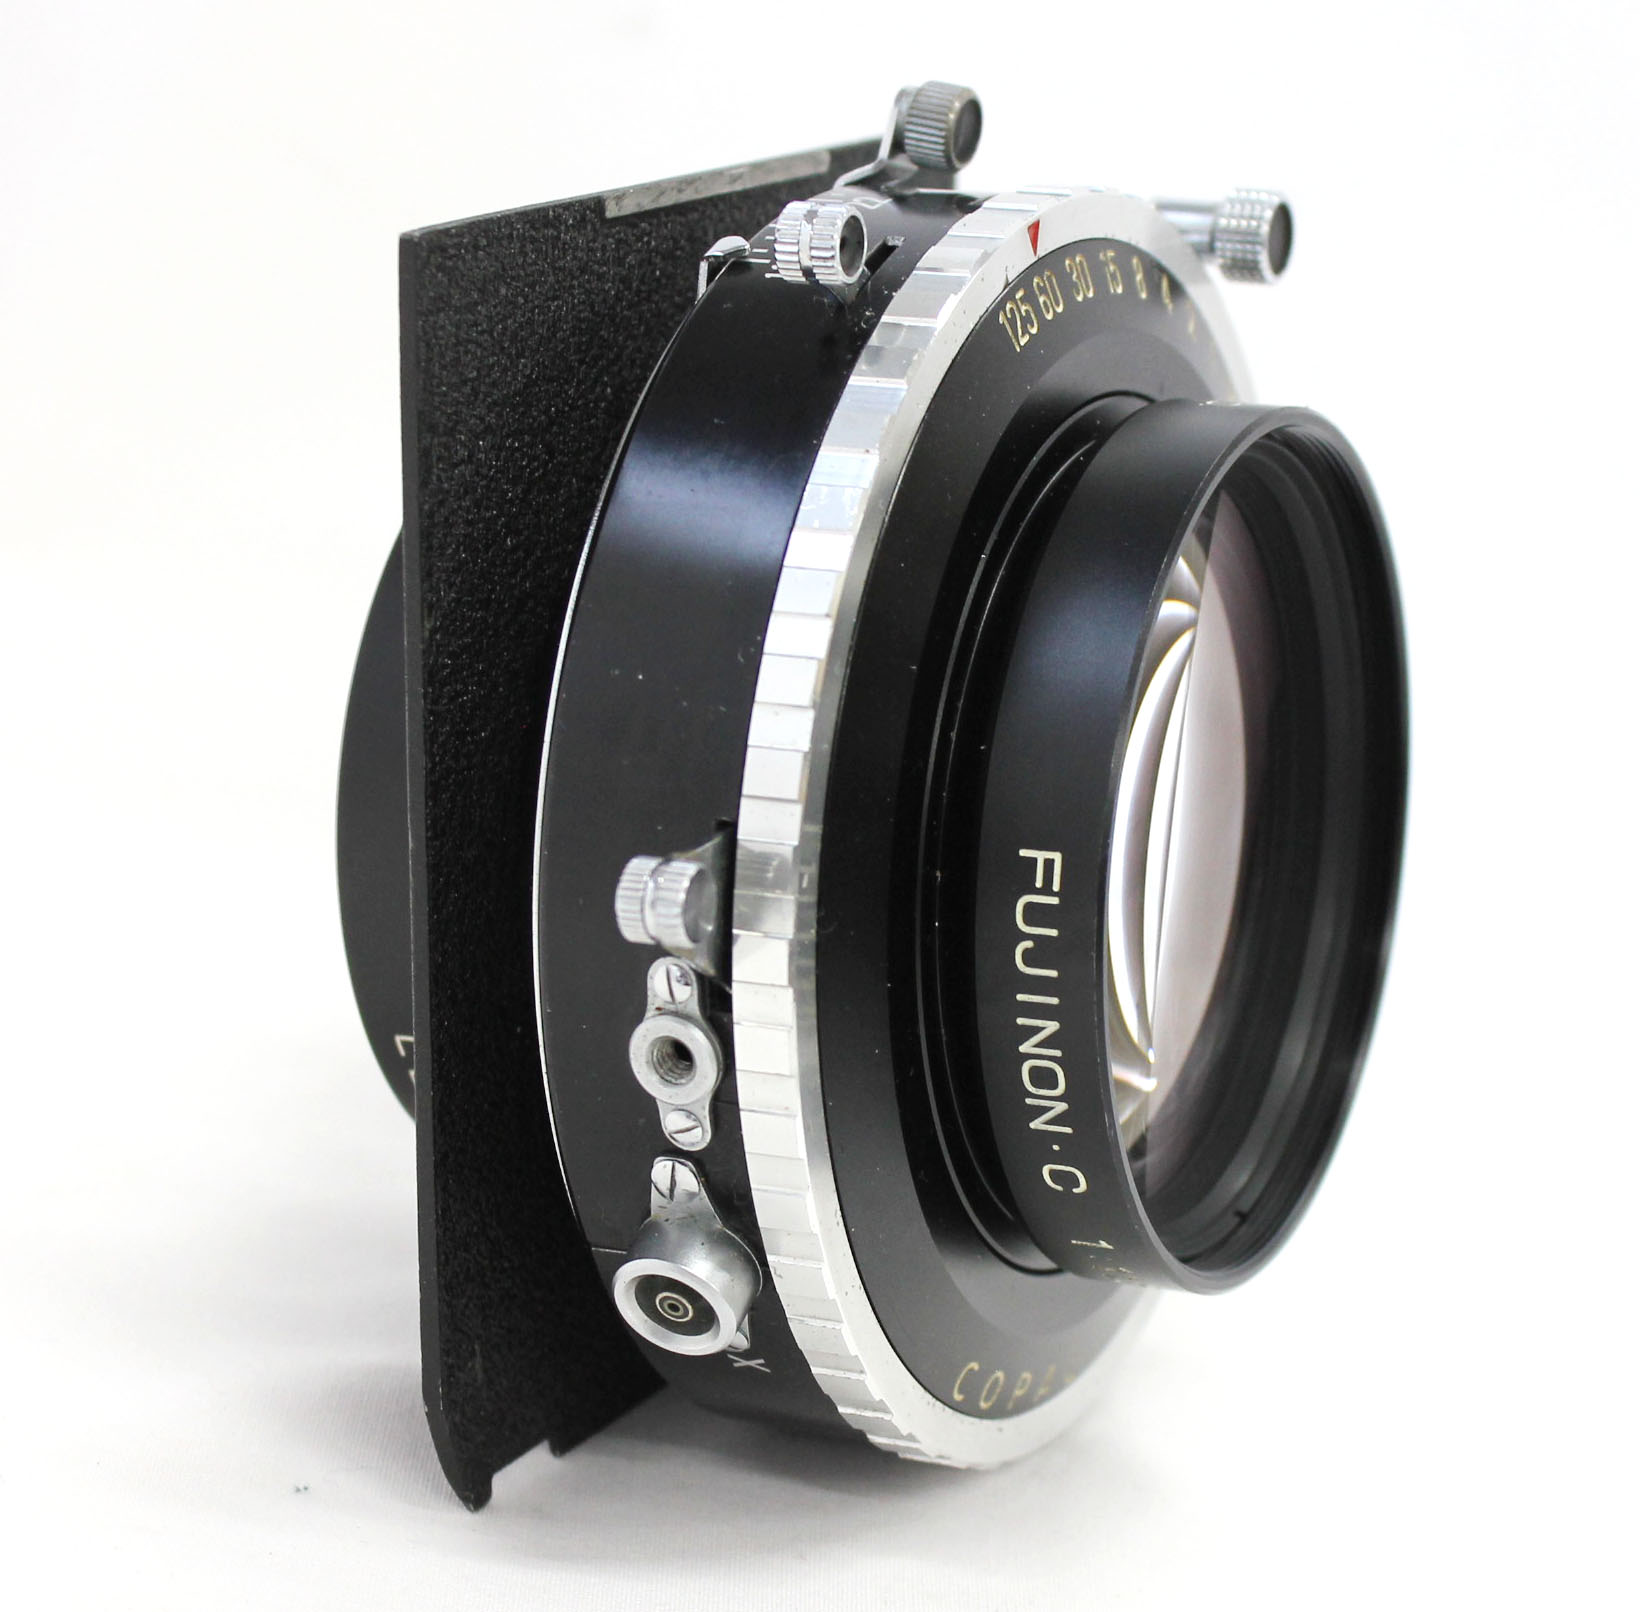  Fuji Fujinon C 600mm F/11.5 4x5 8x10 Large Format Lens Copal No.3 Shutter from Japan Photo 2